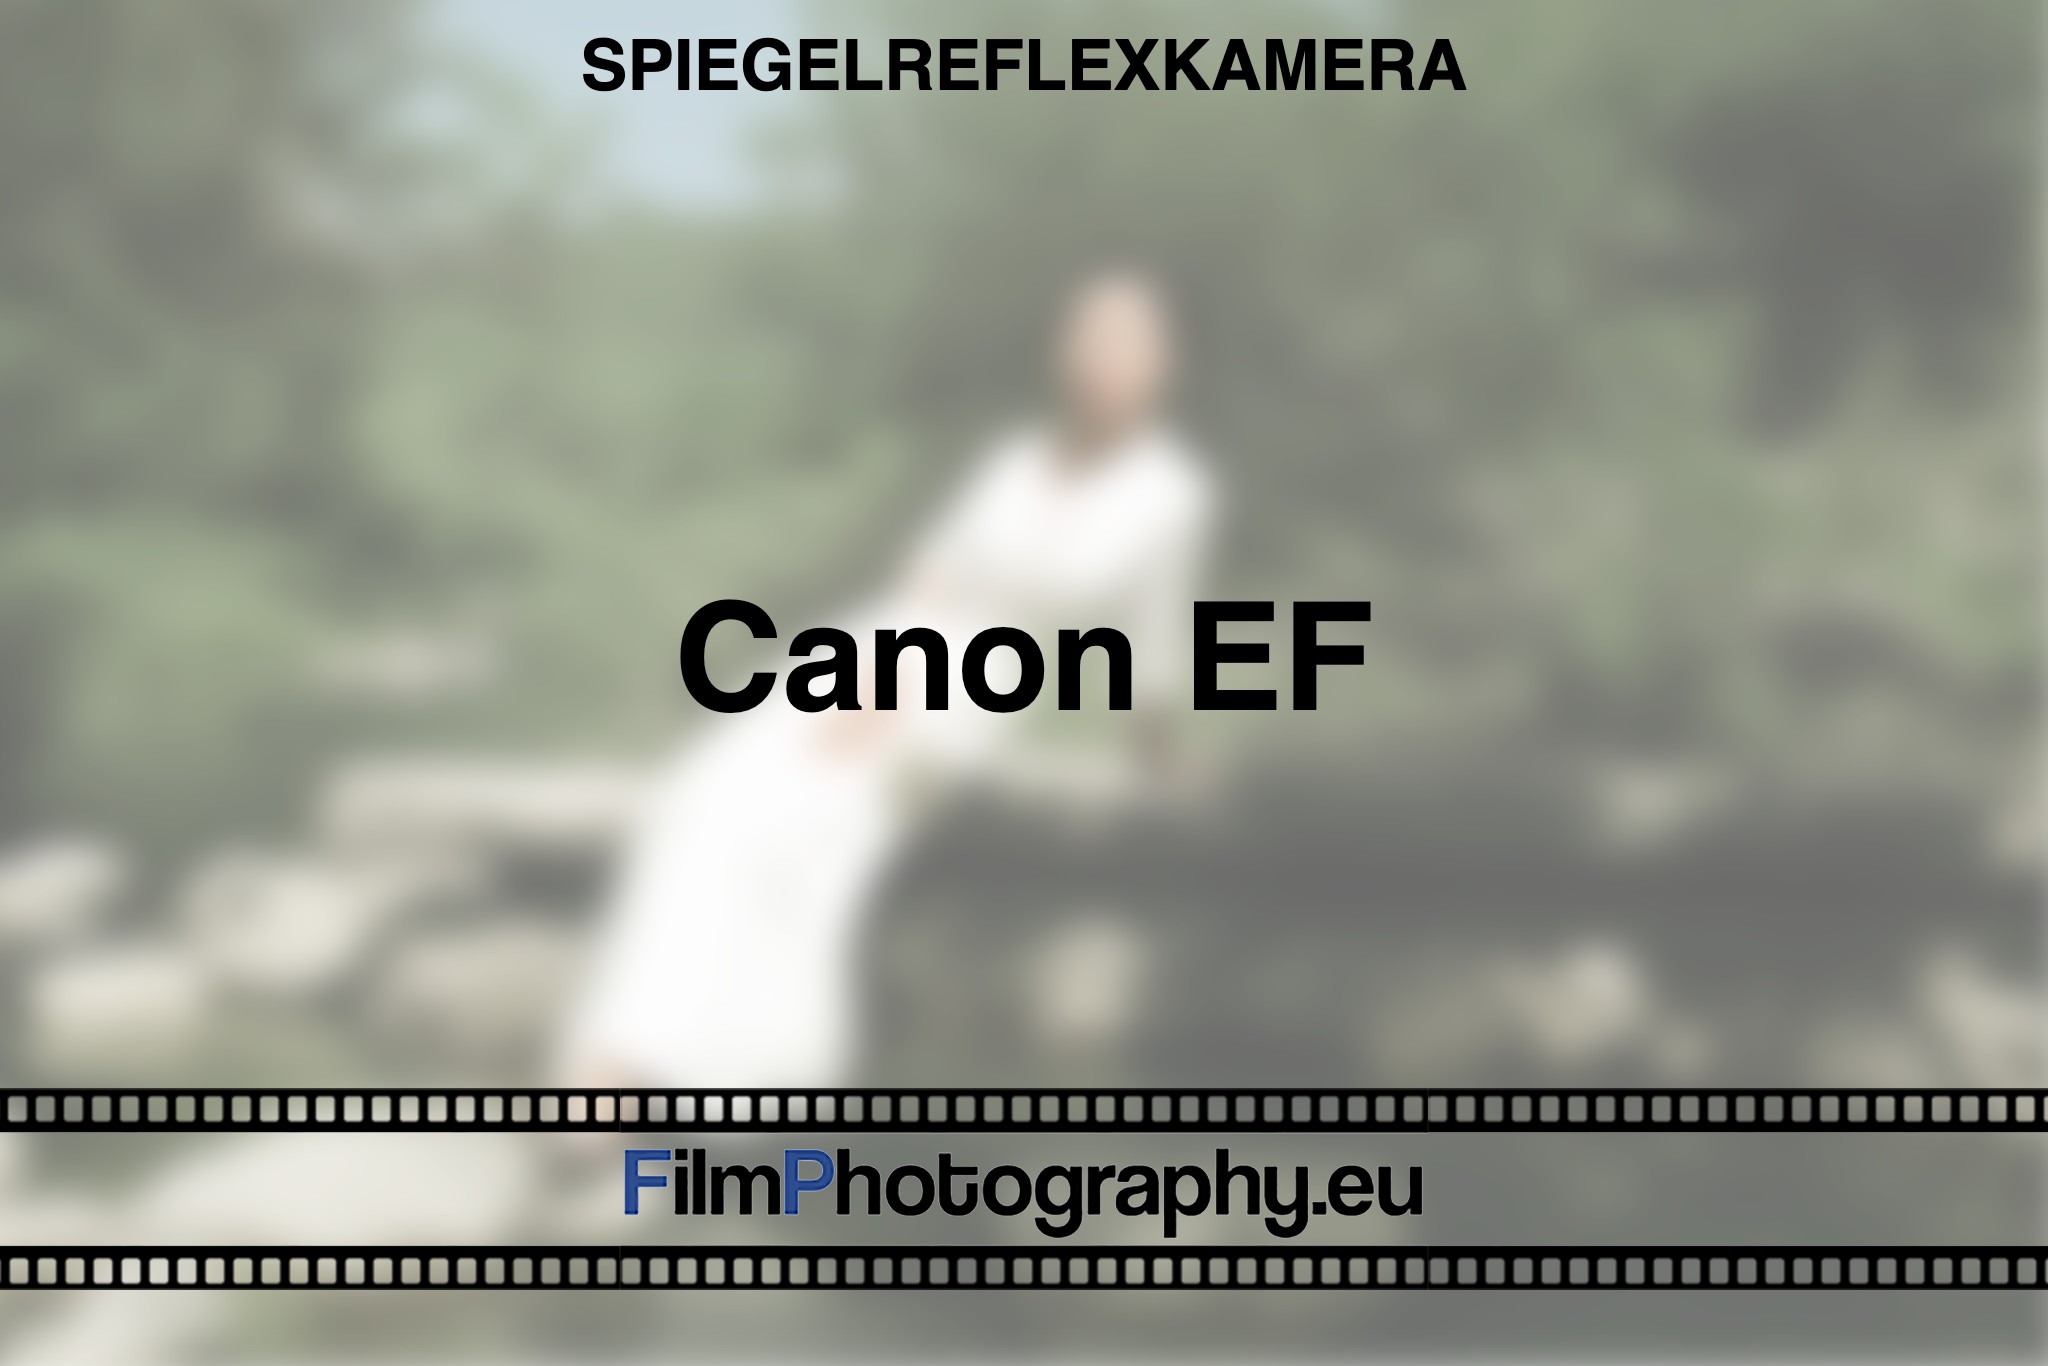 canon-ef-spiegelreflexkamera-bnv